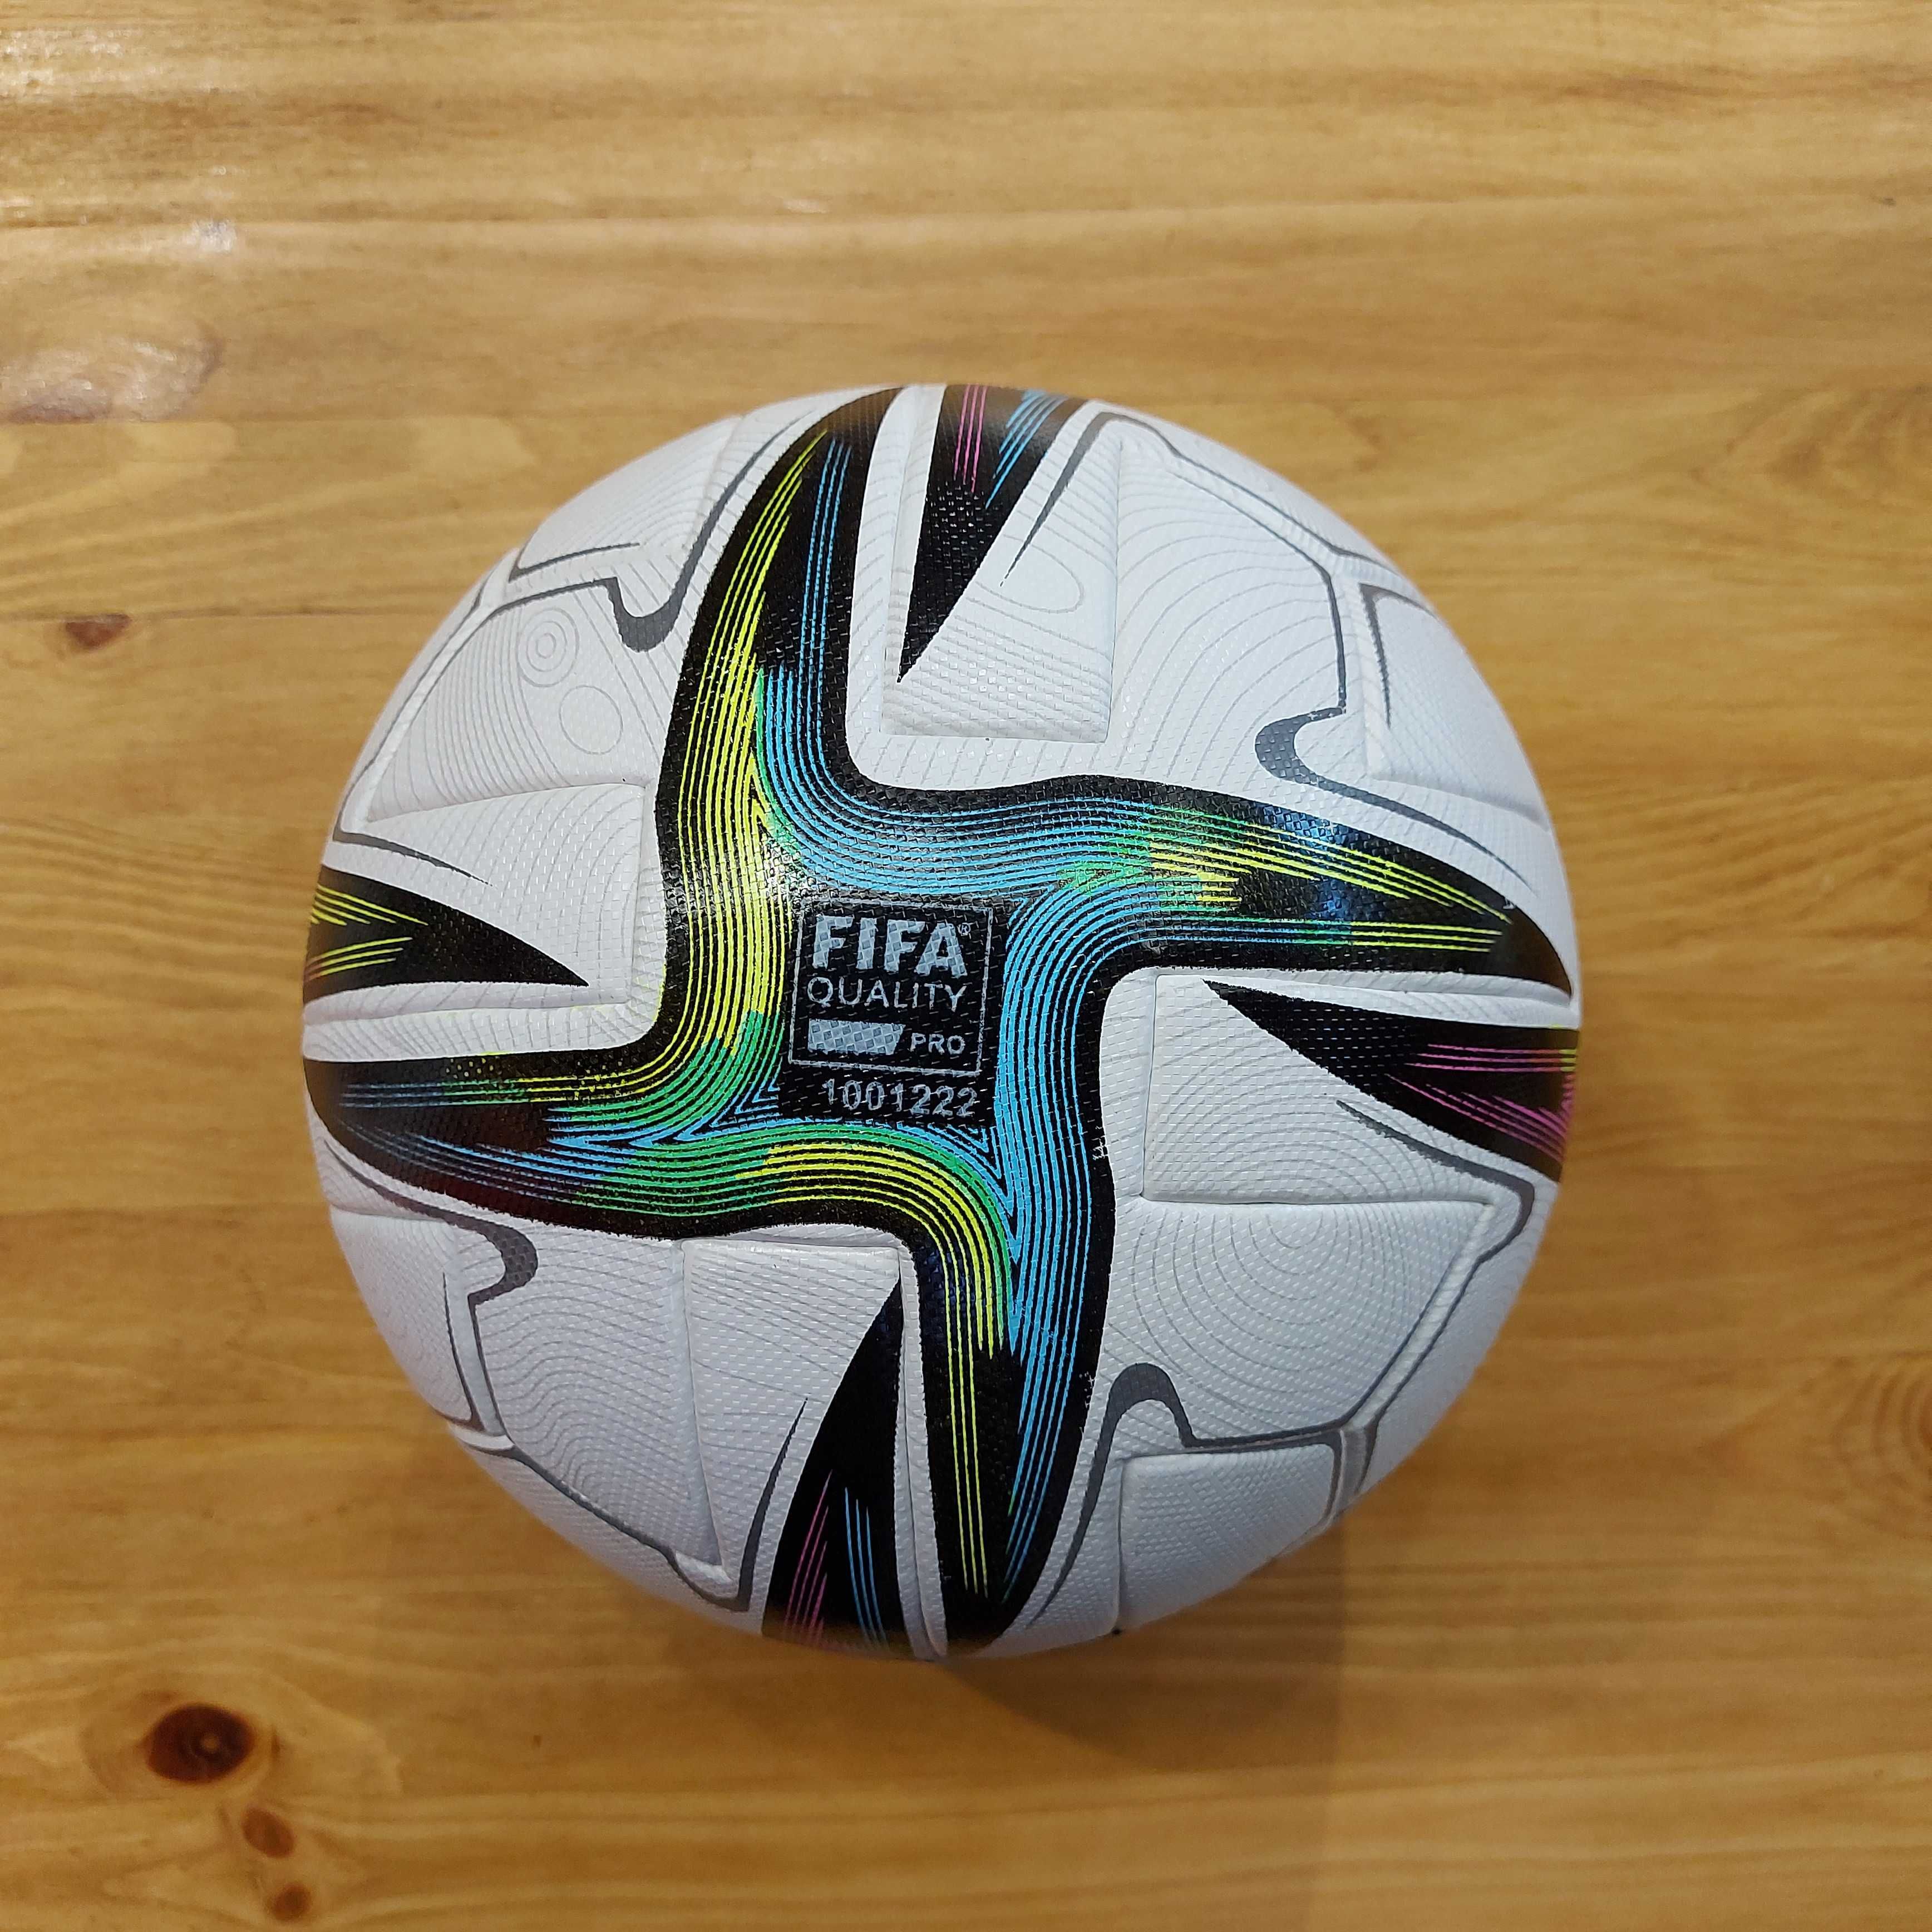 Оригинальный Футбольный мяч Adidas Conext 21. Size 5. Профессиональный